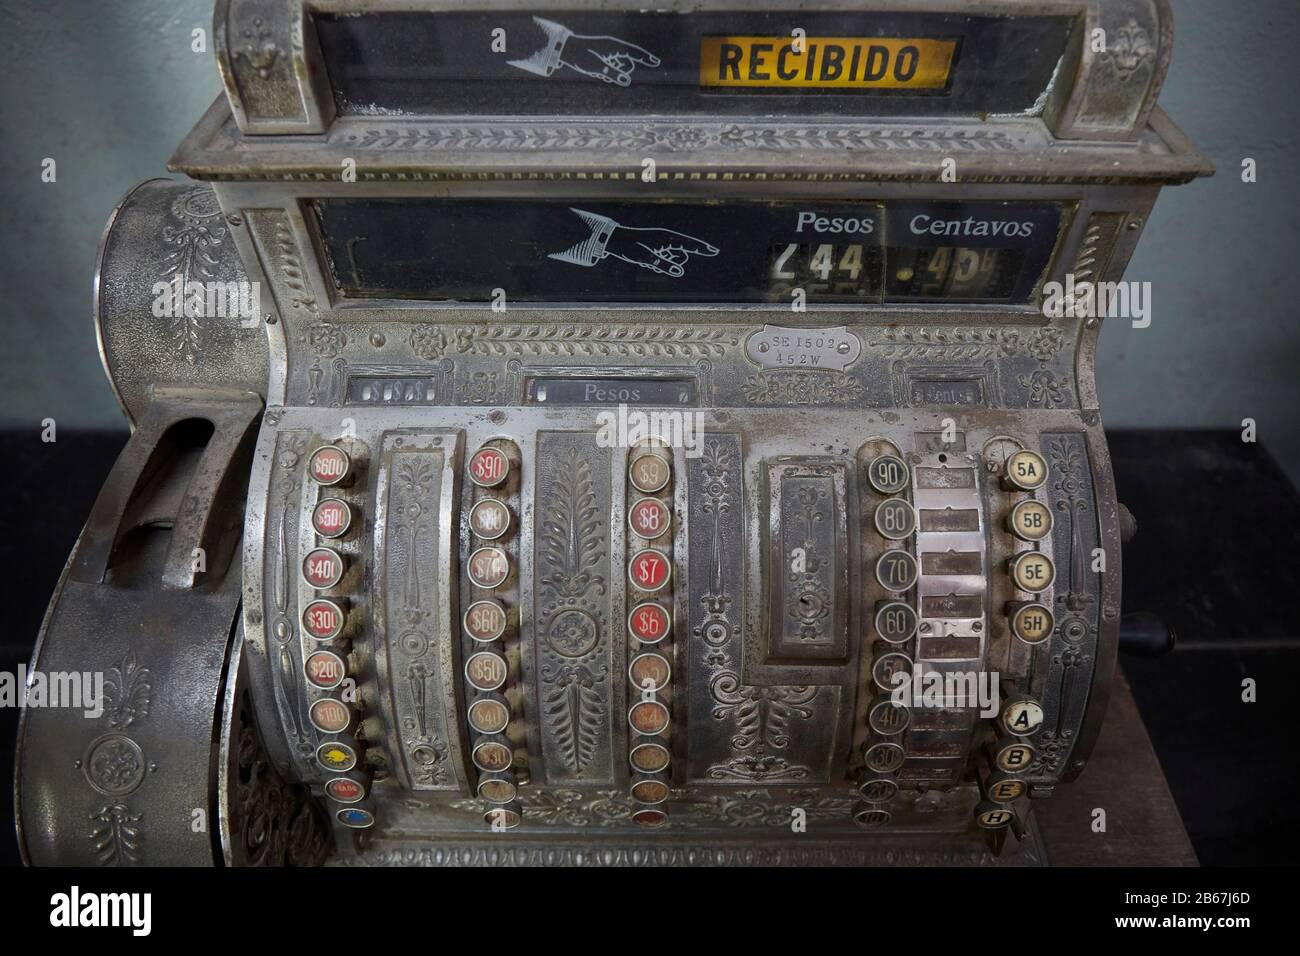 Old cash box machine in pesos, Argentina. Stock Photo